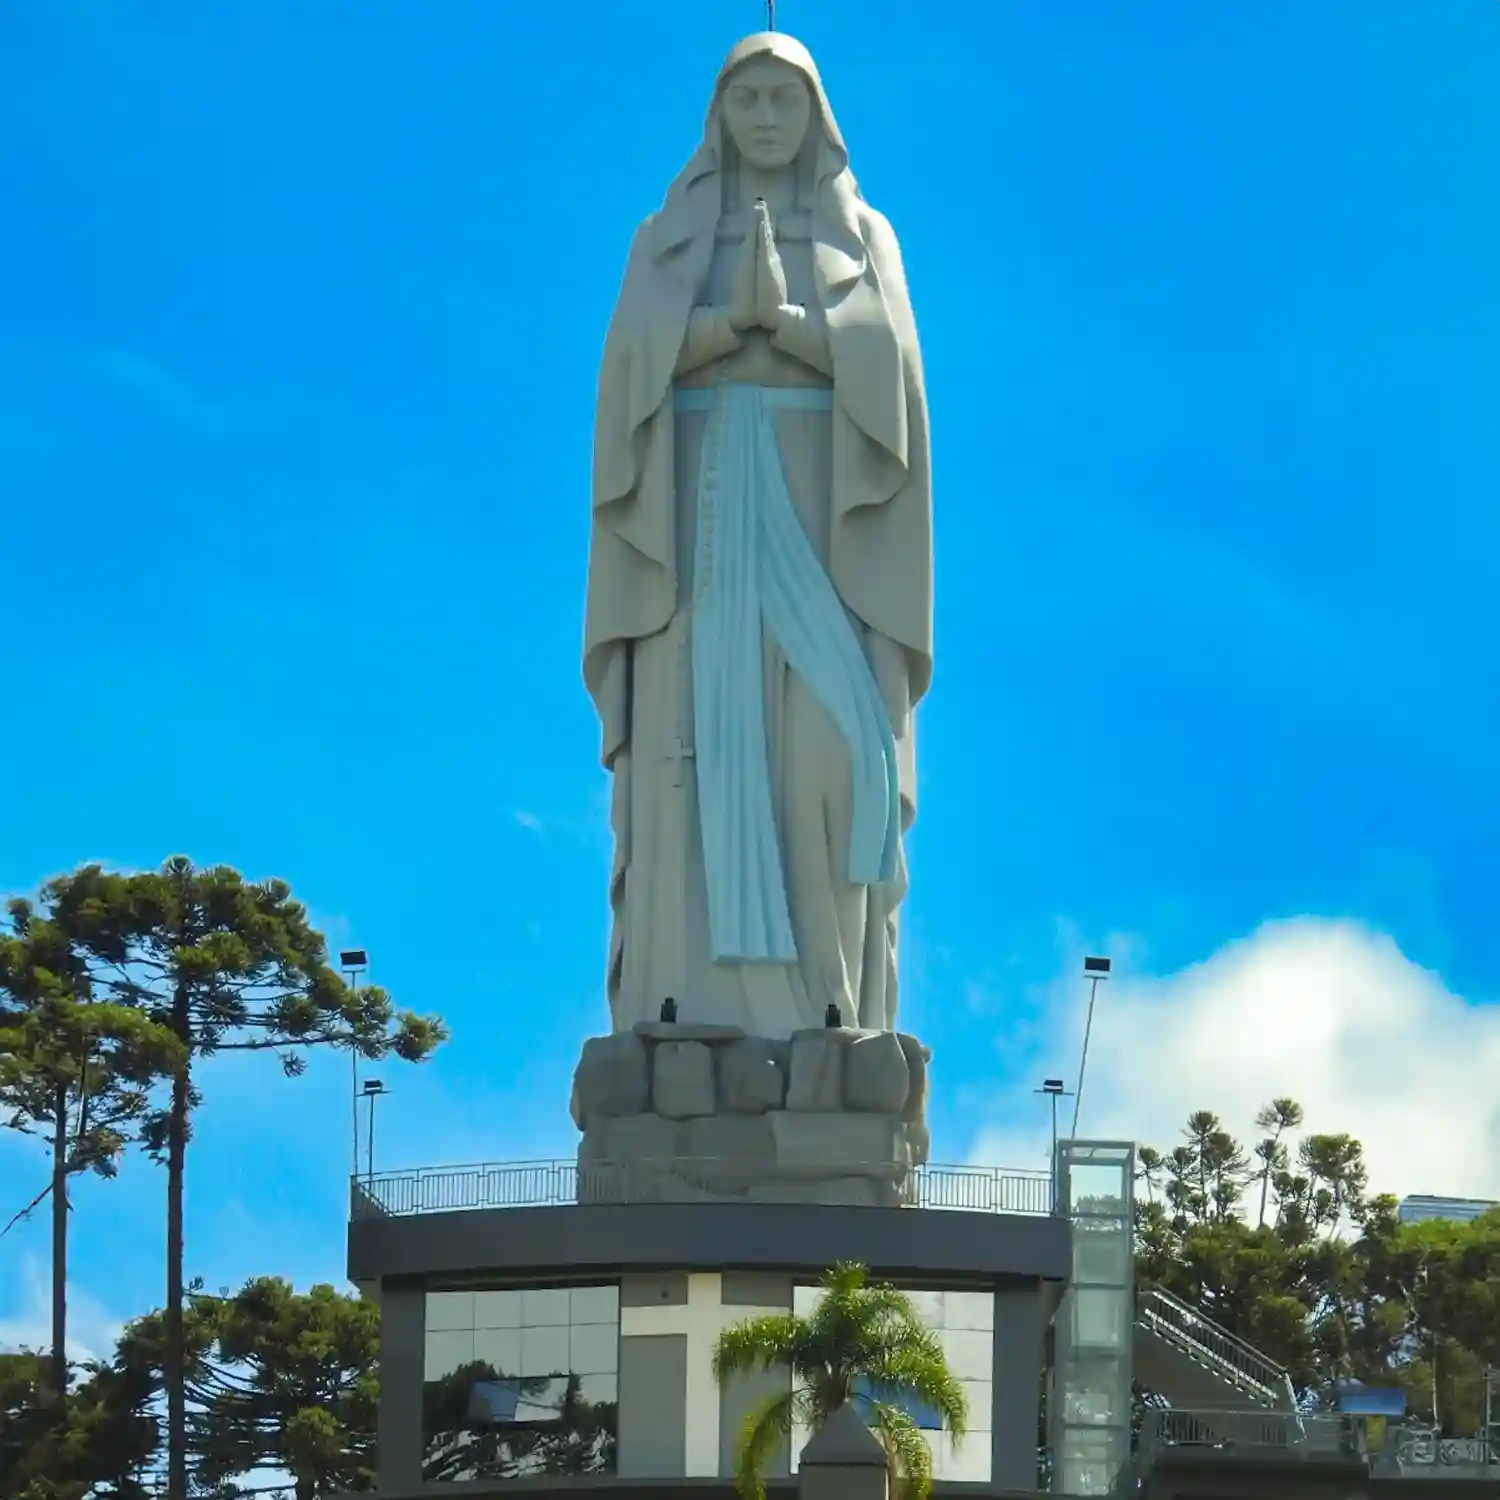 Imagem Nossa Senhora de Lourdes